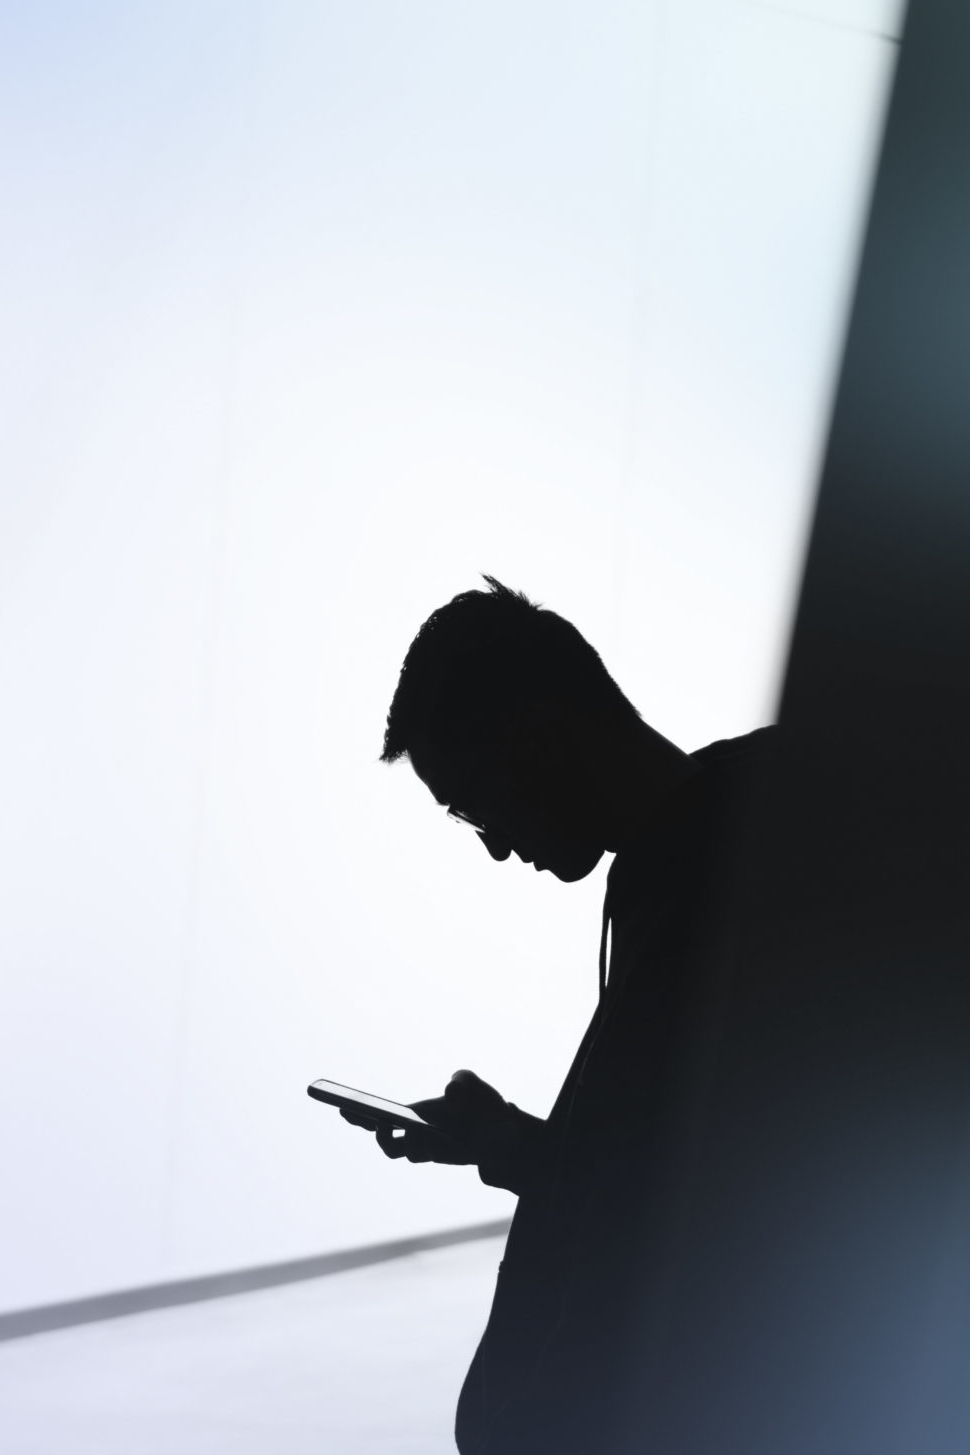 Silhouette eines Mannes mit Smartphone